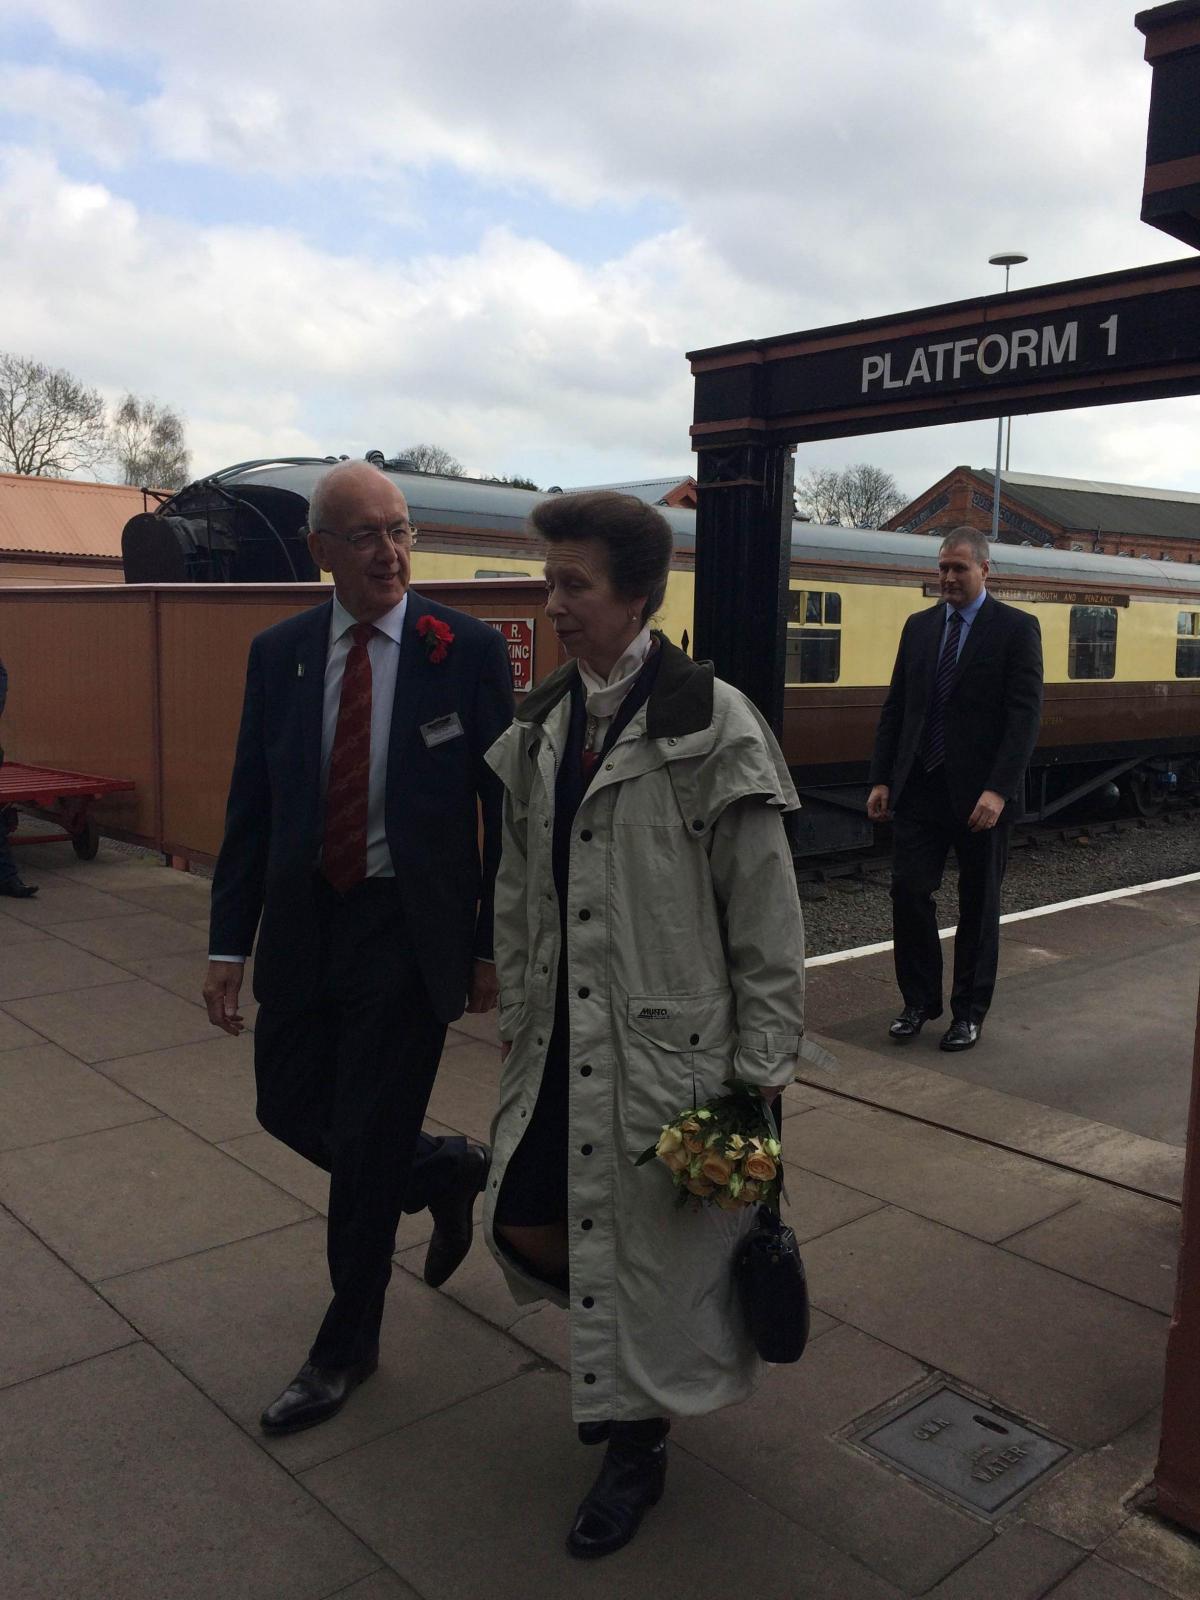 Princess Anne arrives at Kidderminster station